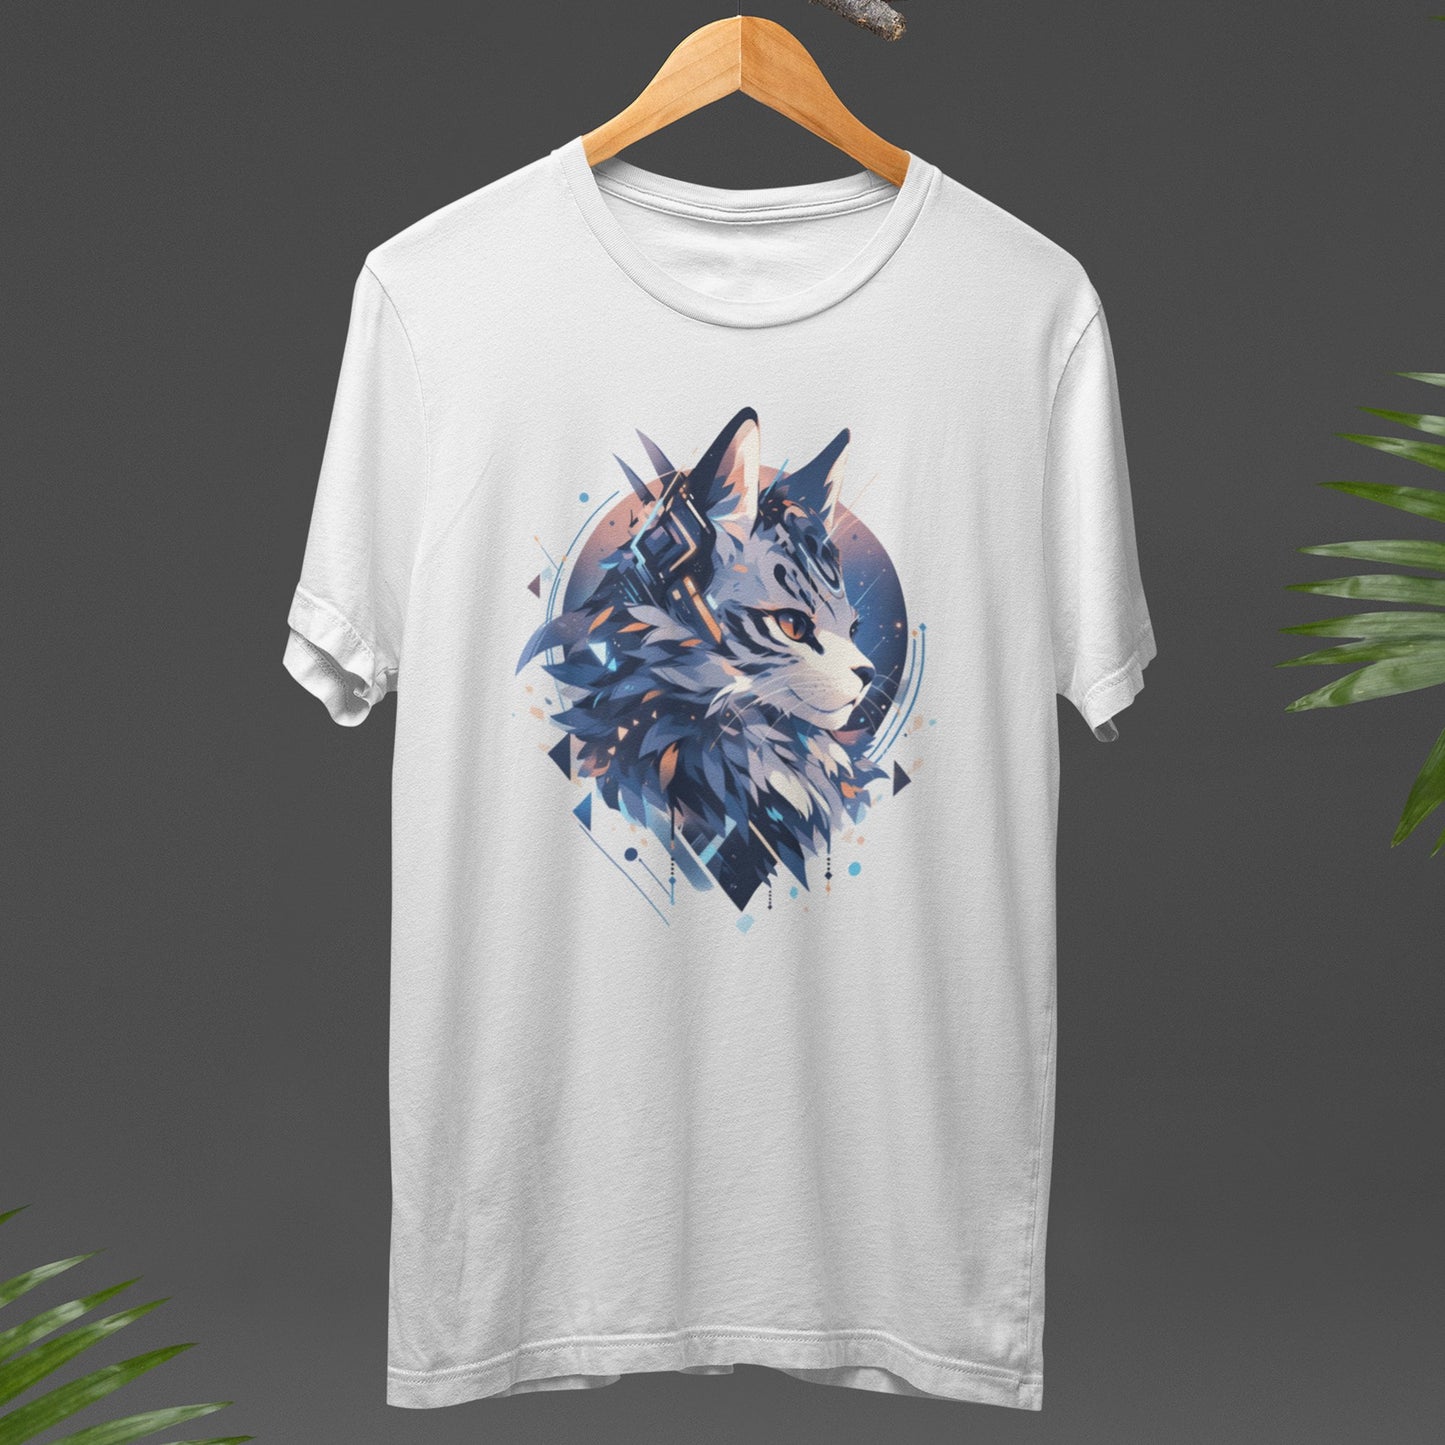 Graphic T Shirt - Geo CatsT-ShirtBlack